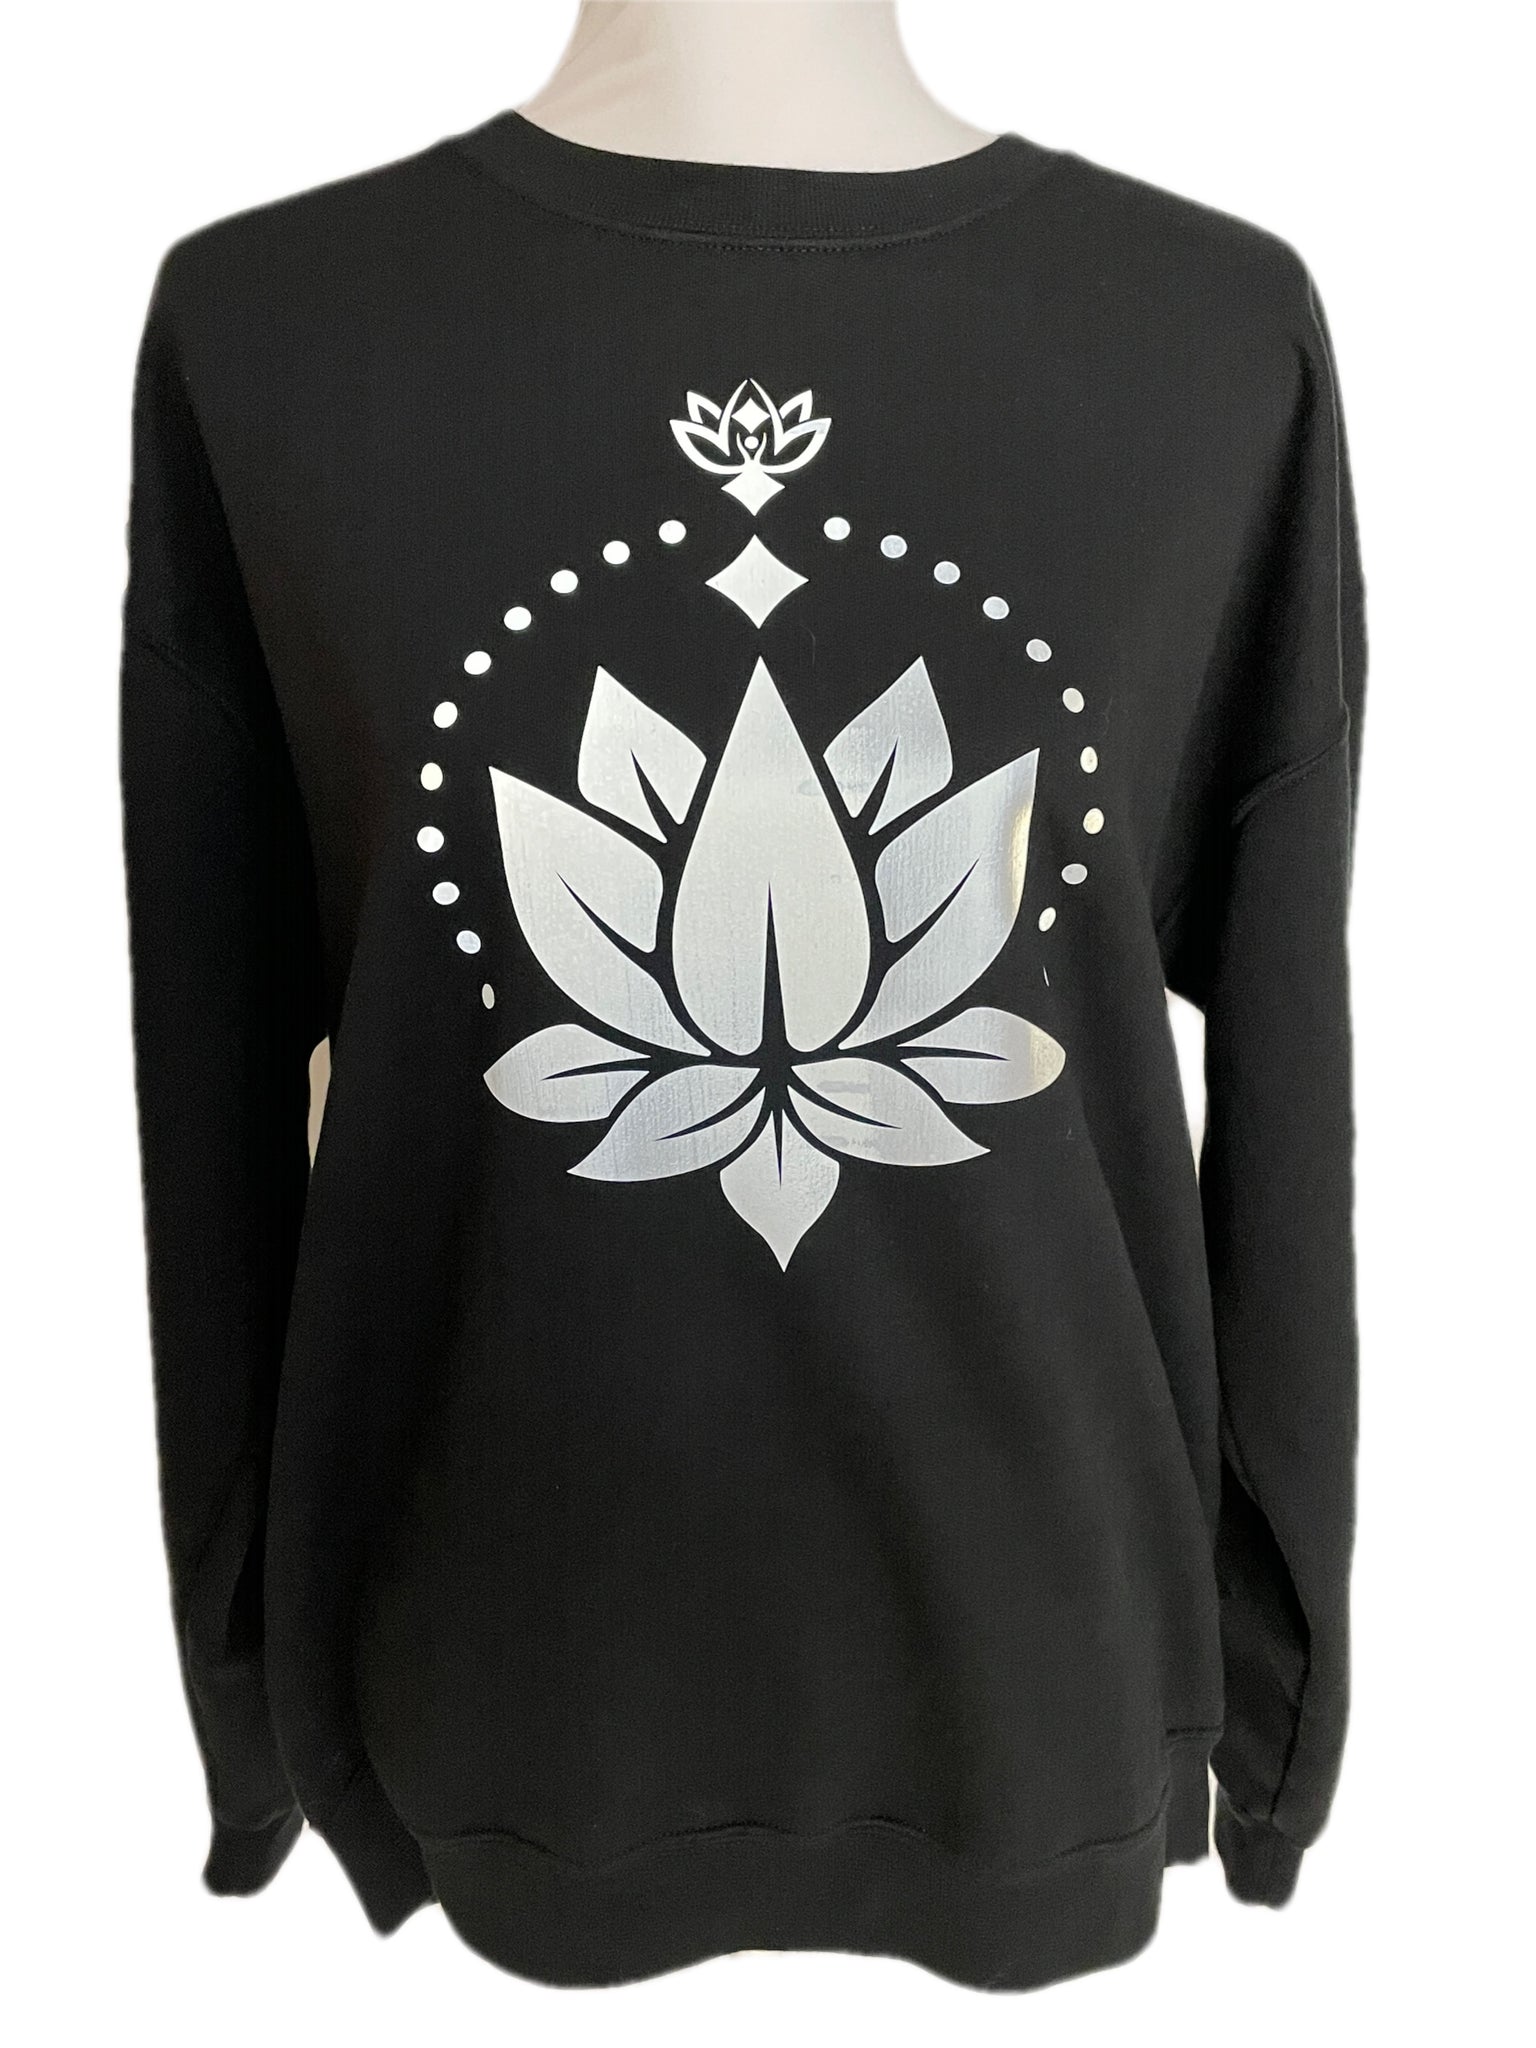 Lotus Reflective Crew Neck Fleece, Yoga shirt, Yoga Wear, Reflective Shirt, Handmade Shirt